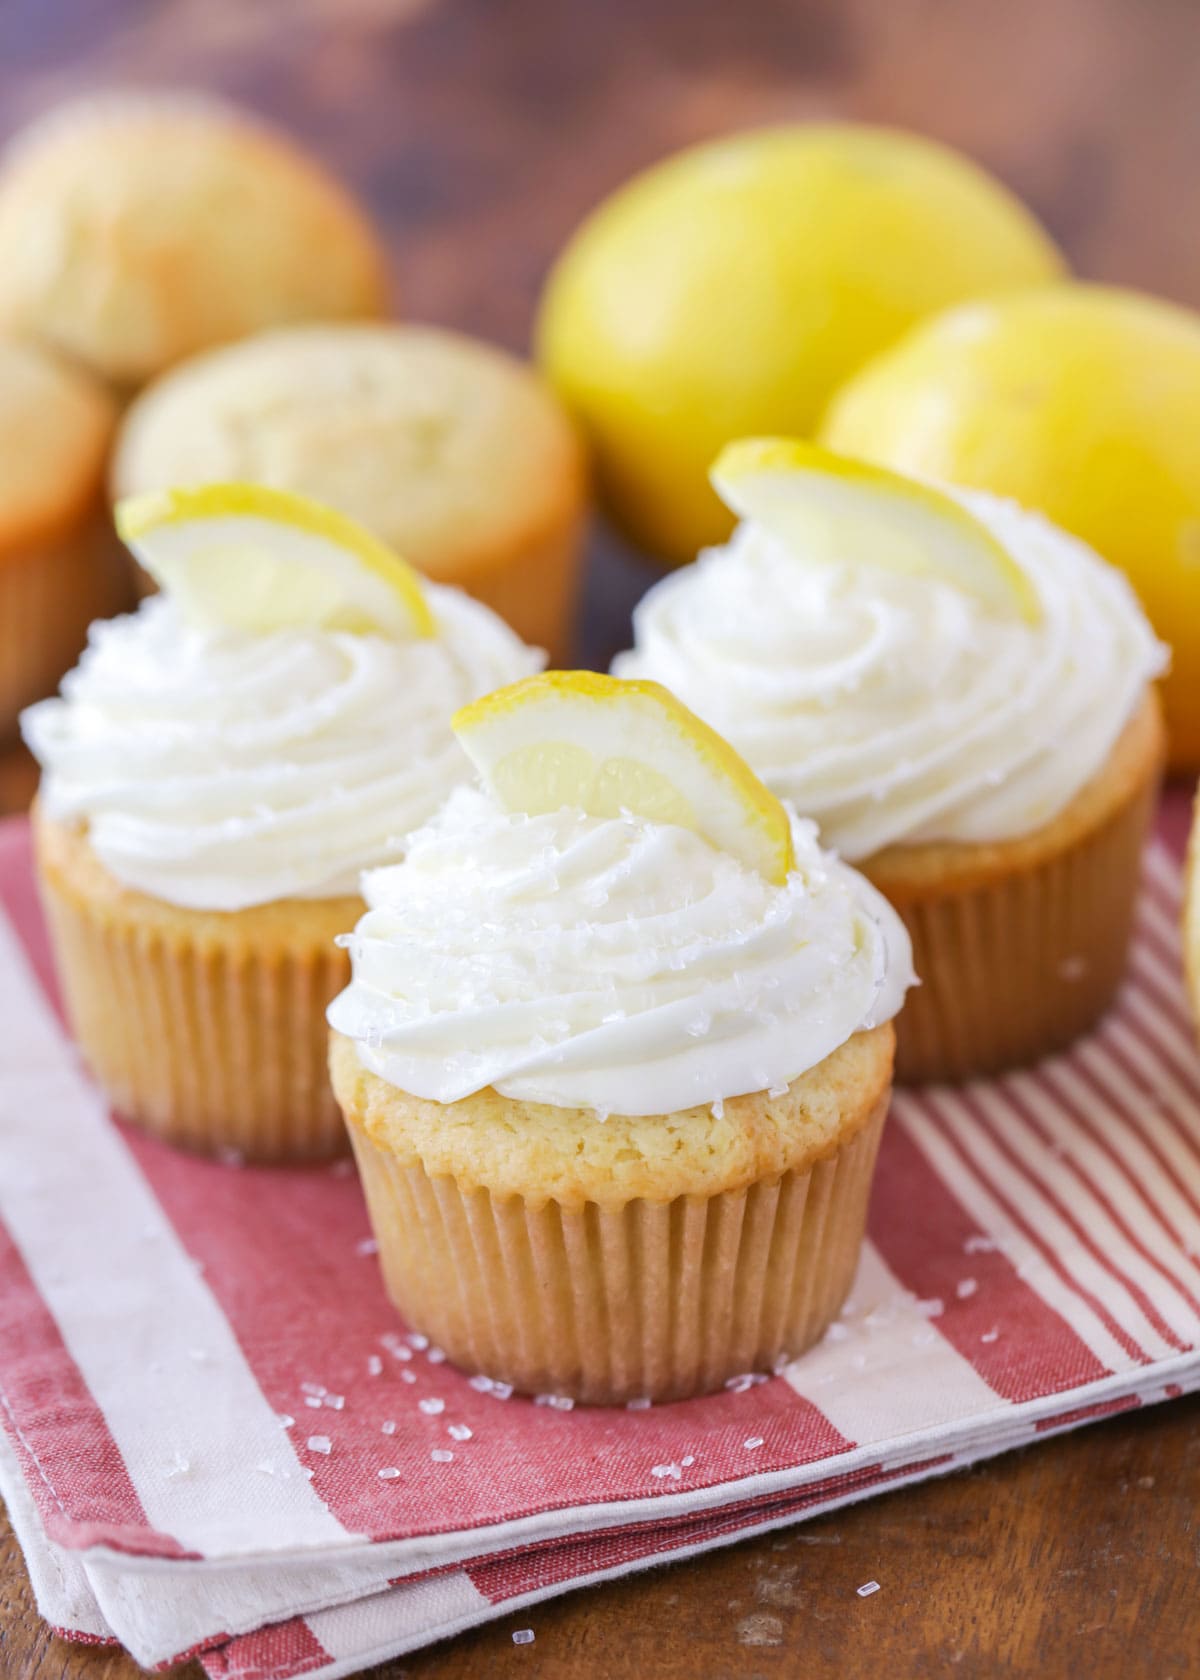 Lemon Cupcakes topped with fresh sliced lemons.